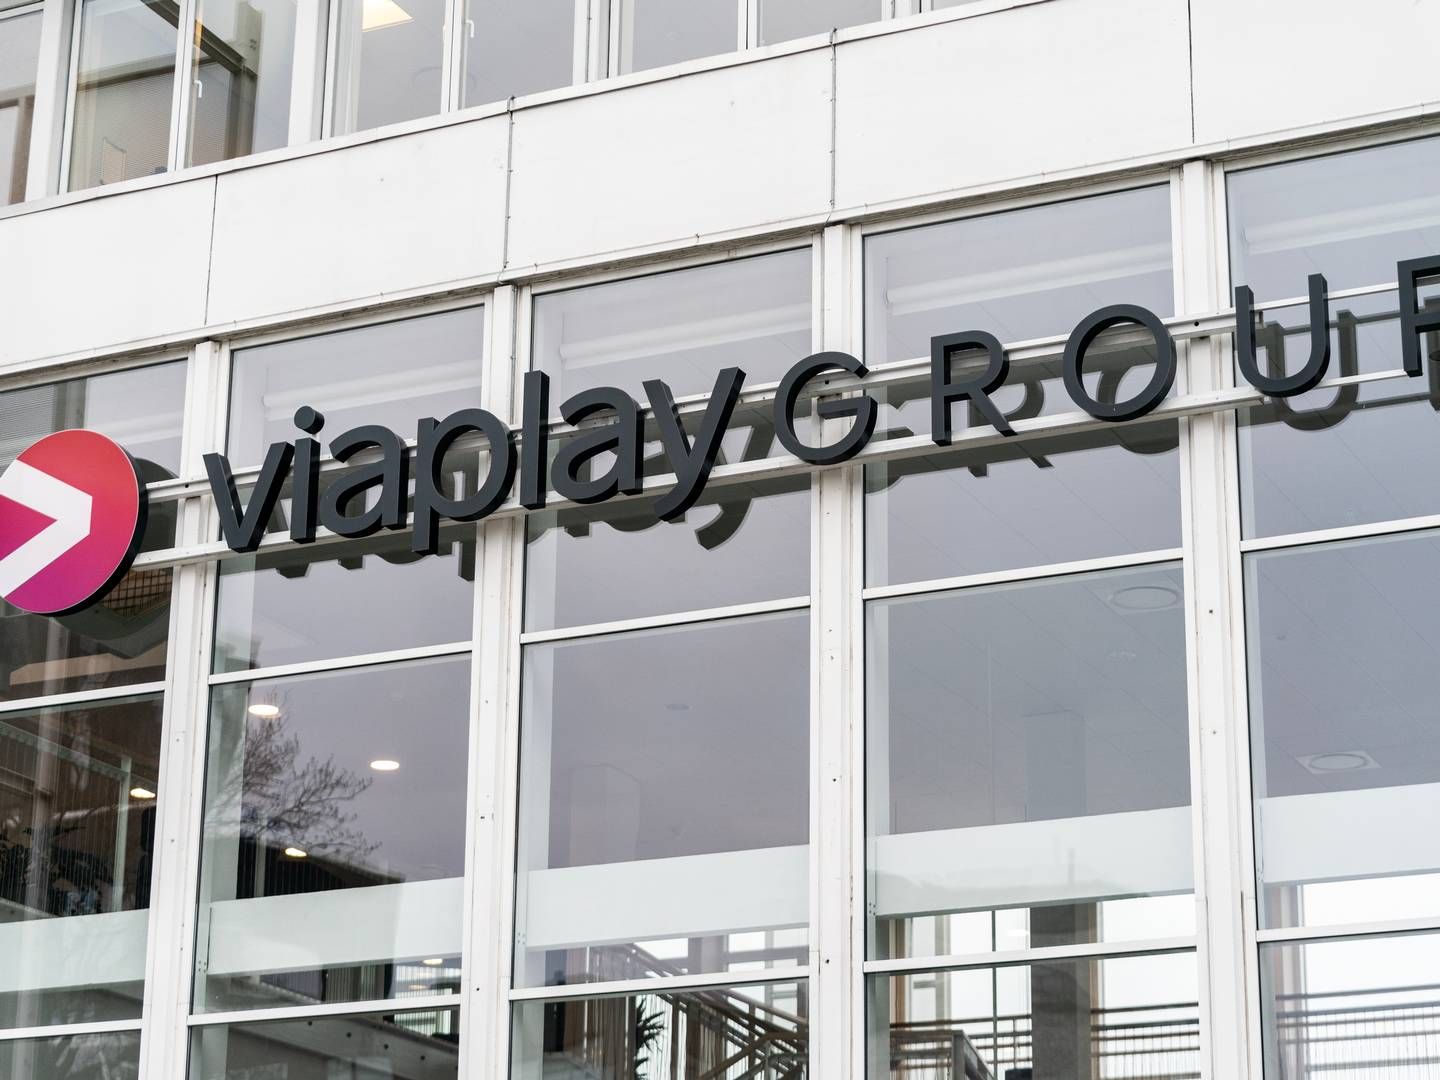 Viaplay Group har fredag morgen fremlagt omfattende redningsplan, der indbefatter udstedelse af fire mia. nye aktier til 1 svensk krone stykket. | Foto: Rasmus Flindt Pedersen